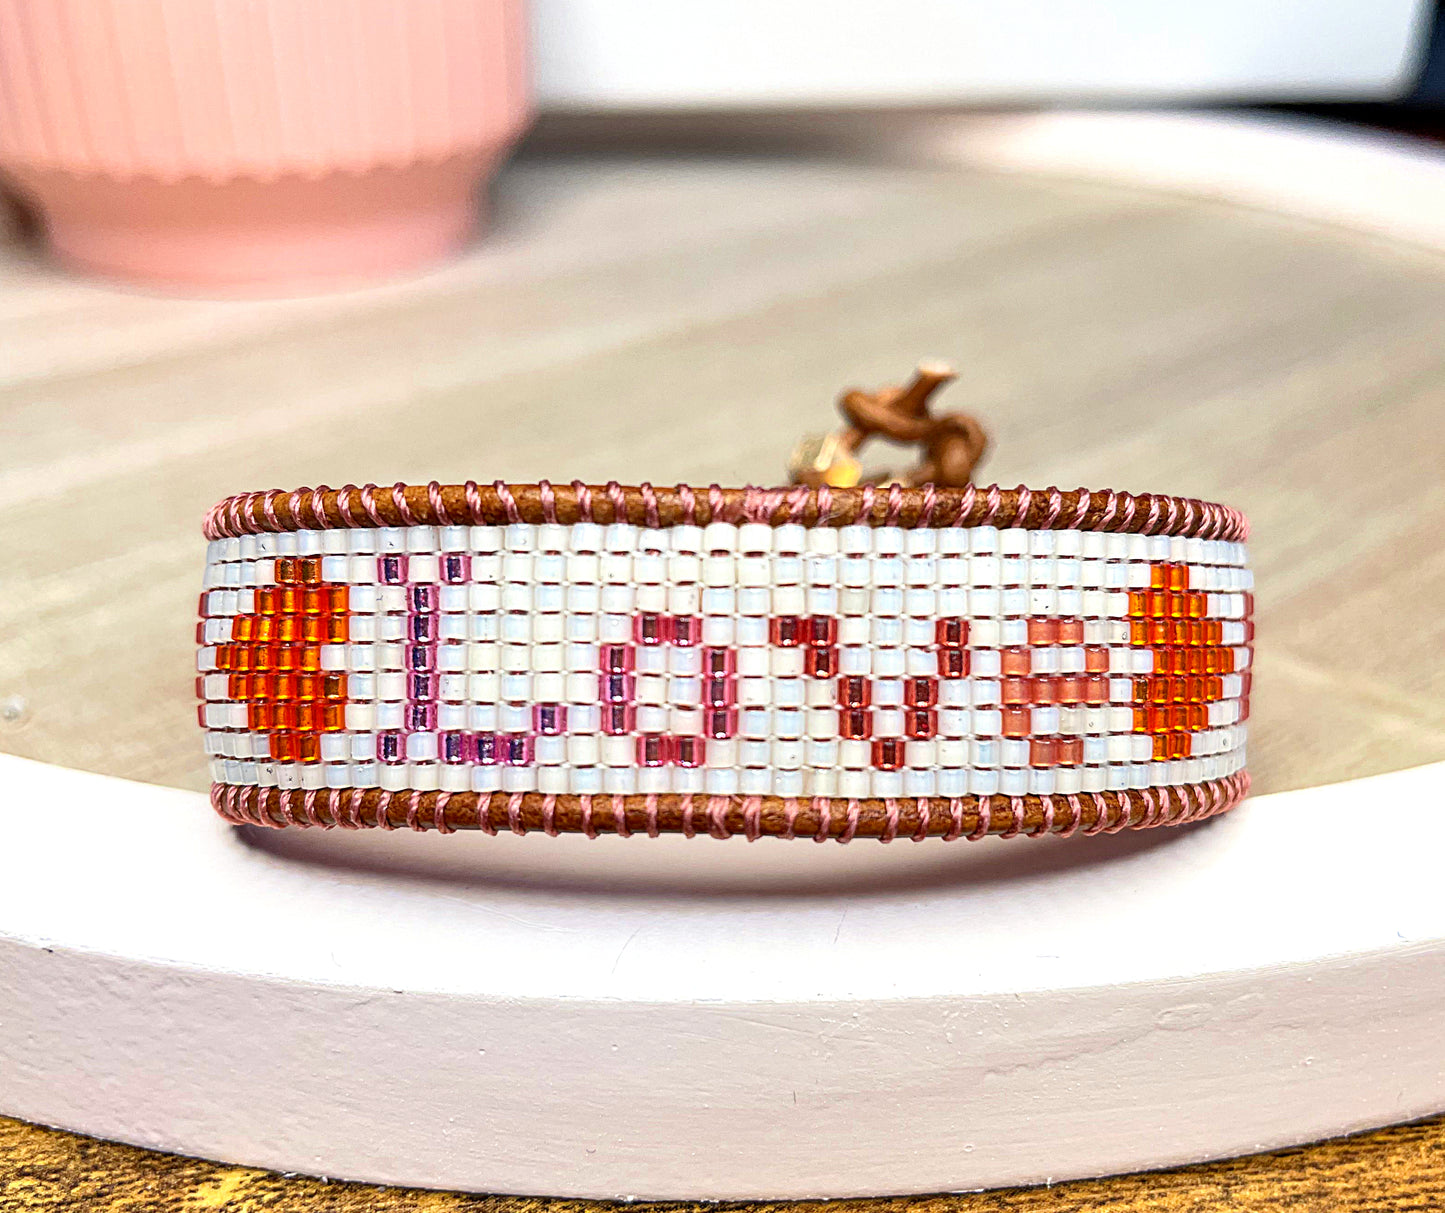 LOVE Hearts Bead Loom Woven Bracelet